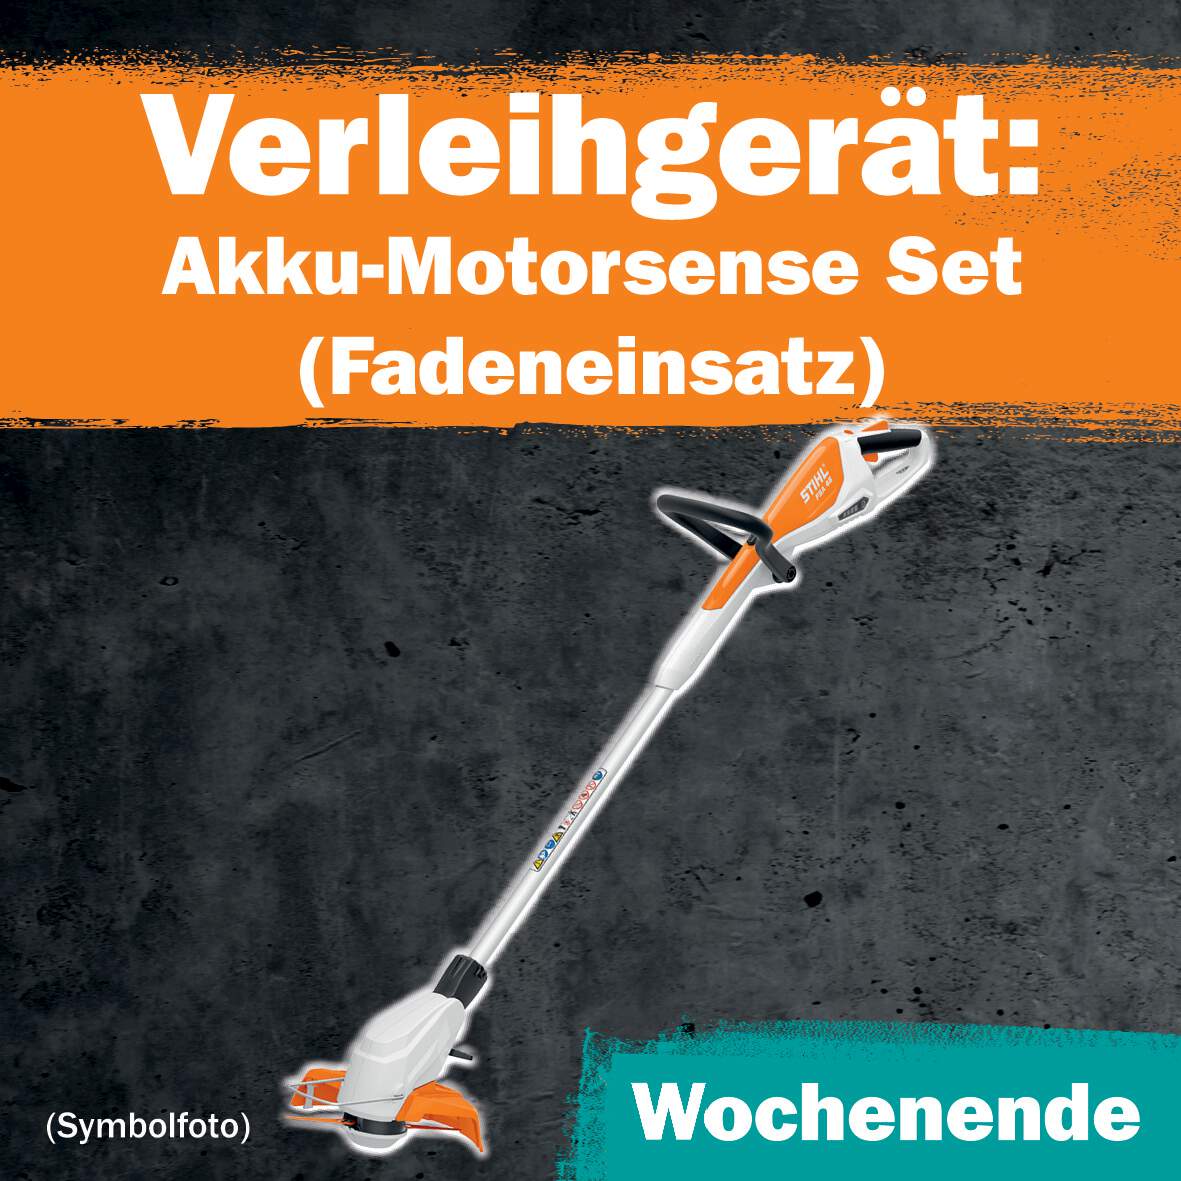 1288688 - Akku-Motorsense Set 1 WE Leihdauer (Fadeneinsatz)